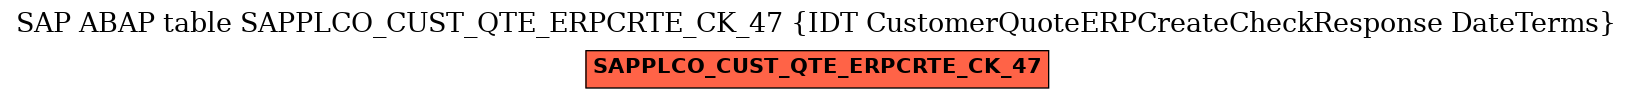 E-R Diagram for table SAPPLCO_CUST_QTE_ERPCRTE_CK_47 (IDT CustomerQuoteERPCreateCheckResponse DateTerms)